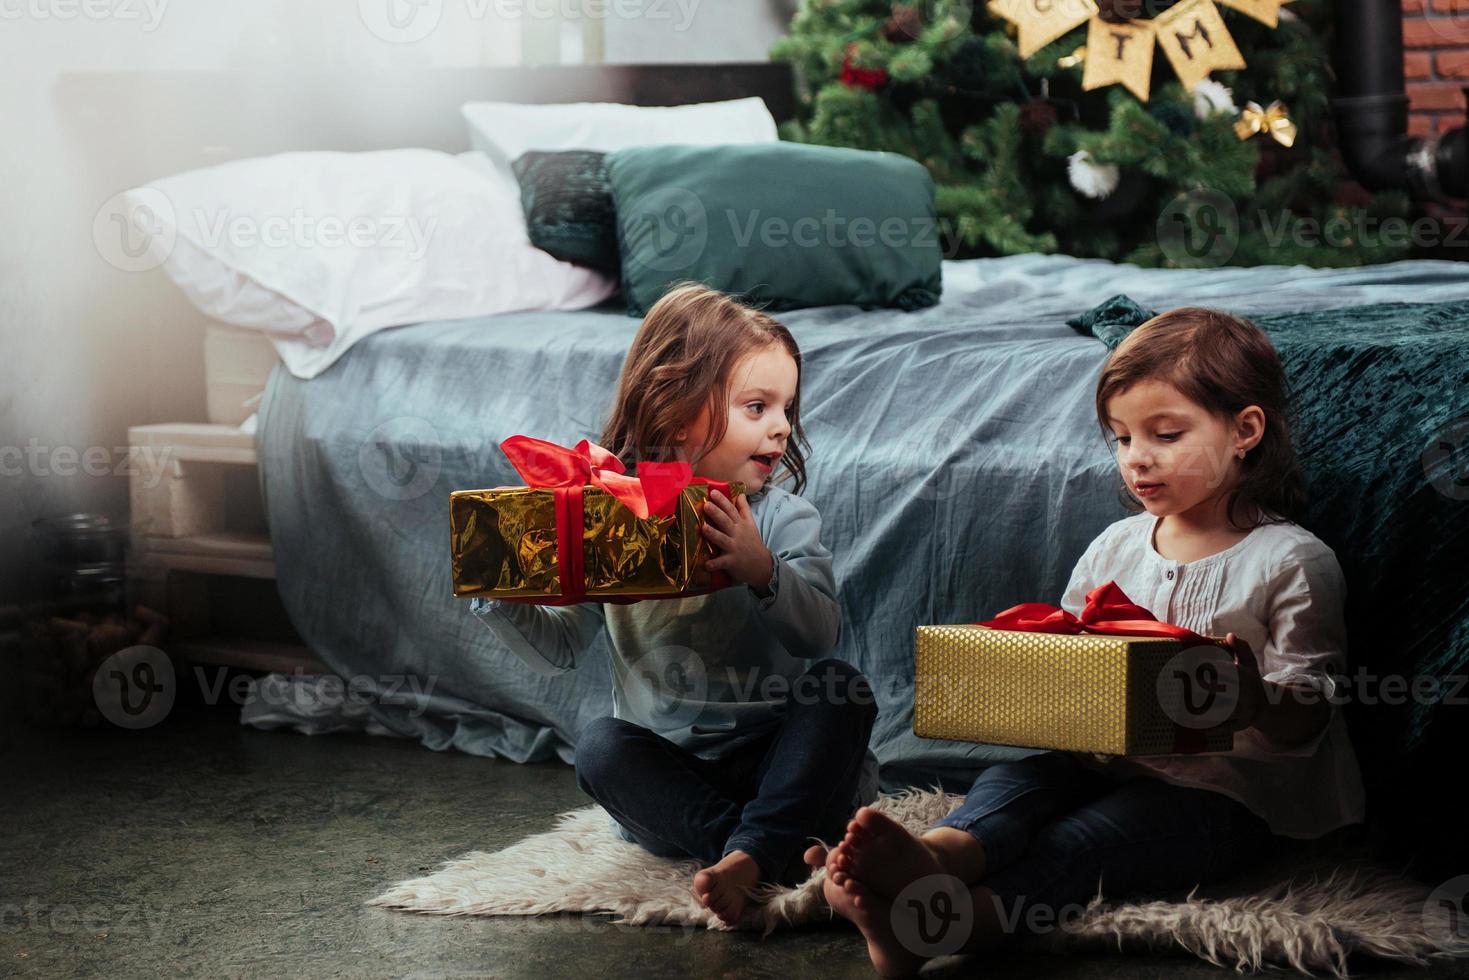 Precioso dormitorio decorado. vacaciones navideñas con regalos para estos dos niños que se sientan en el interior de la bonita habitación cerca de la cama foto